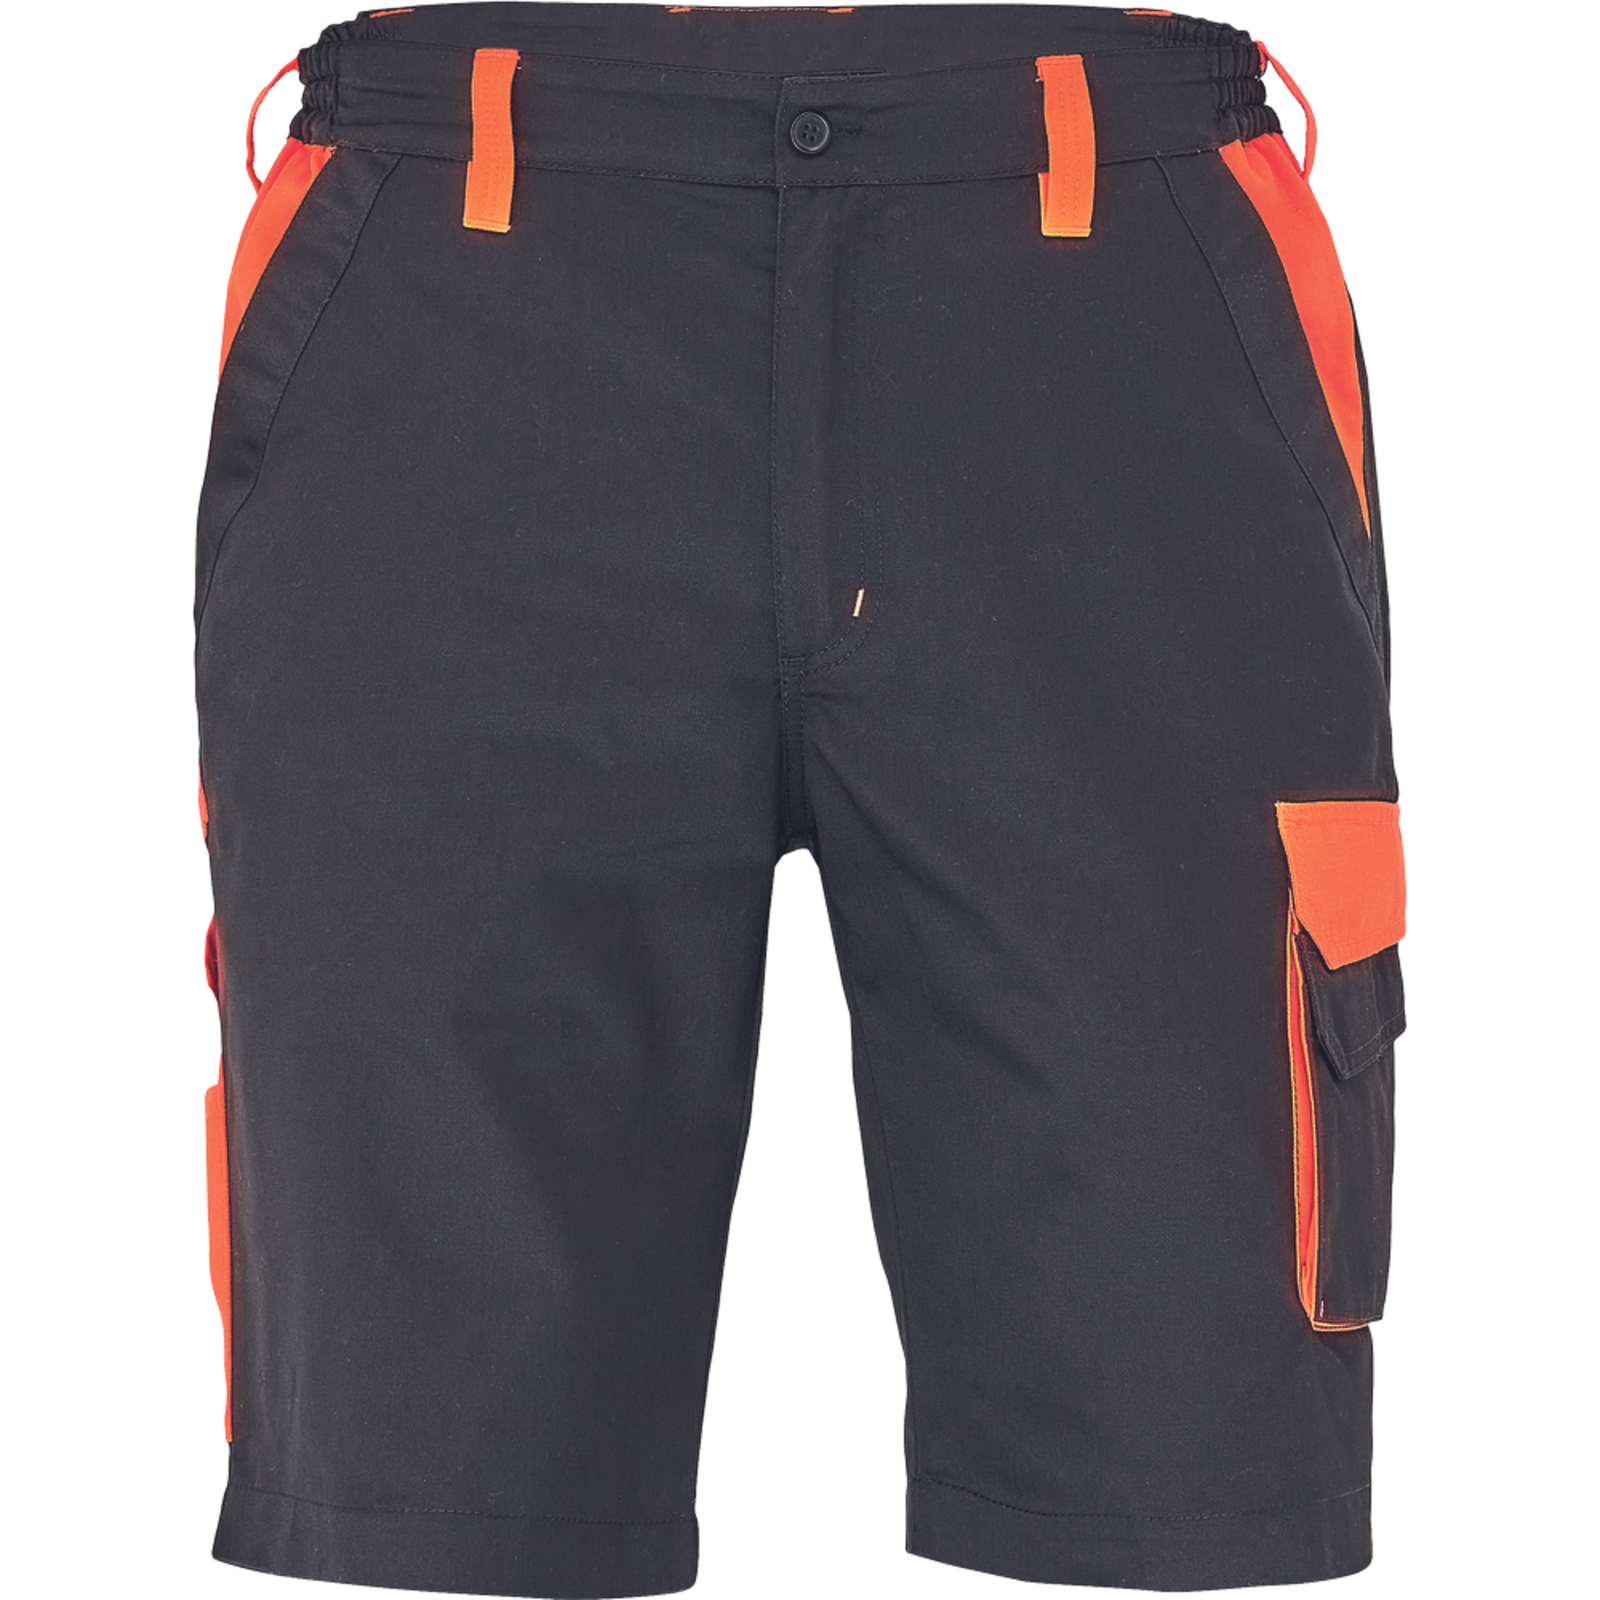 Pánske šortky Cerva Max Vivo - veľkosť: 62, farba: čierna/oranžová